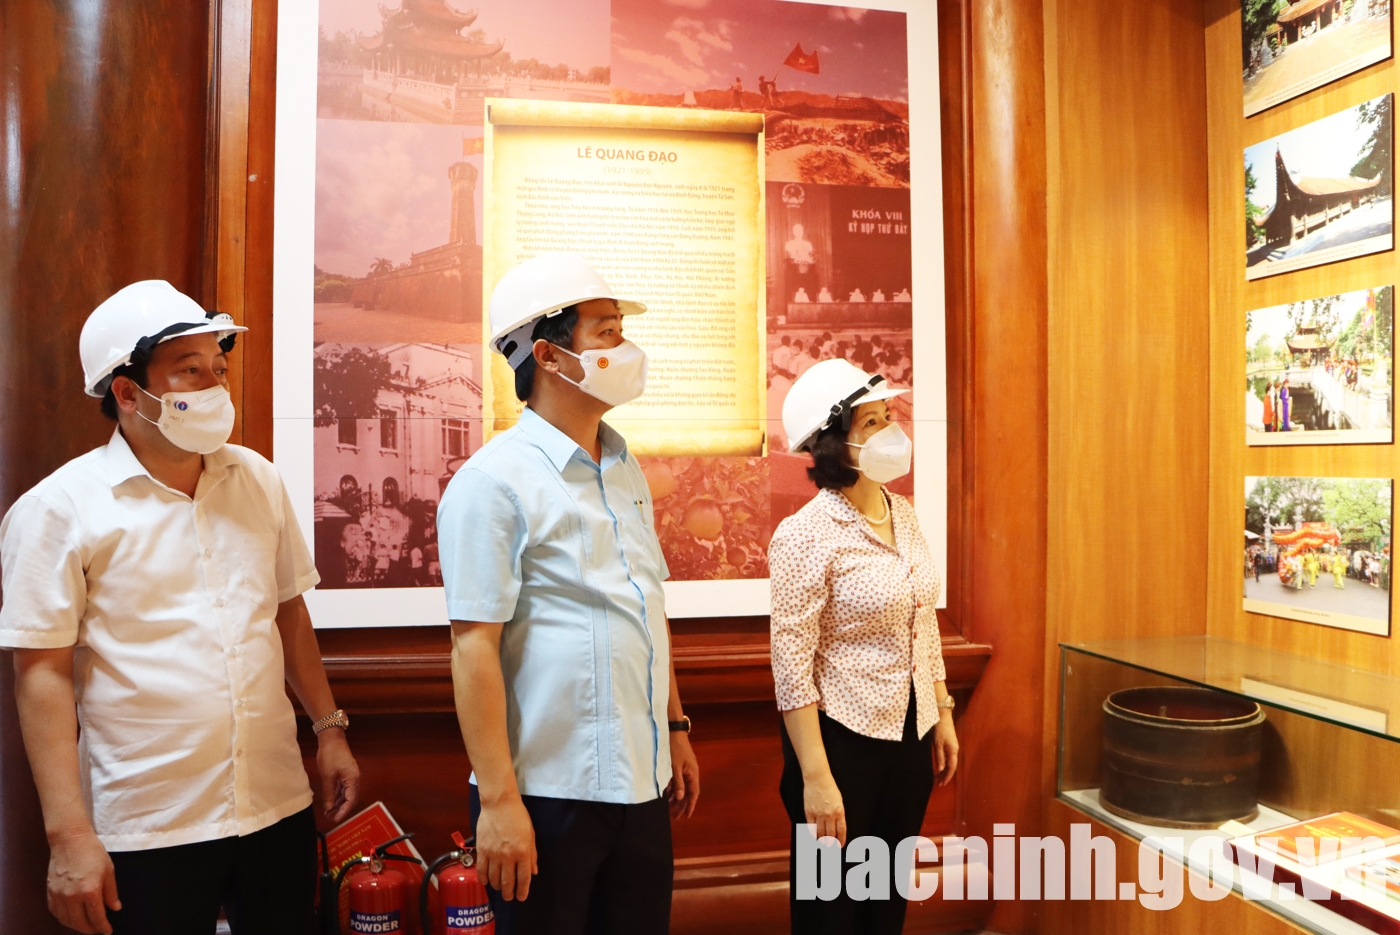 Hội nghị đánh giá công tác chuẩn bị tổ chức kỷ niệm 100 năm Ngày sinh Chủ tịch Quốc hội Lê Quang Đạo